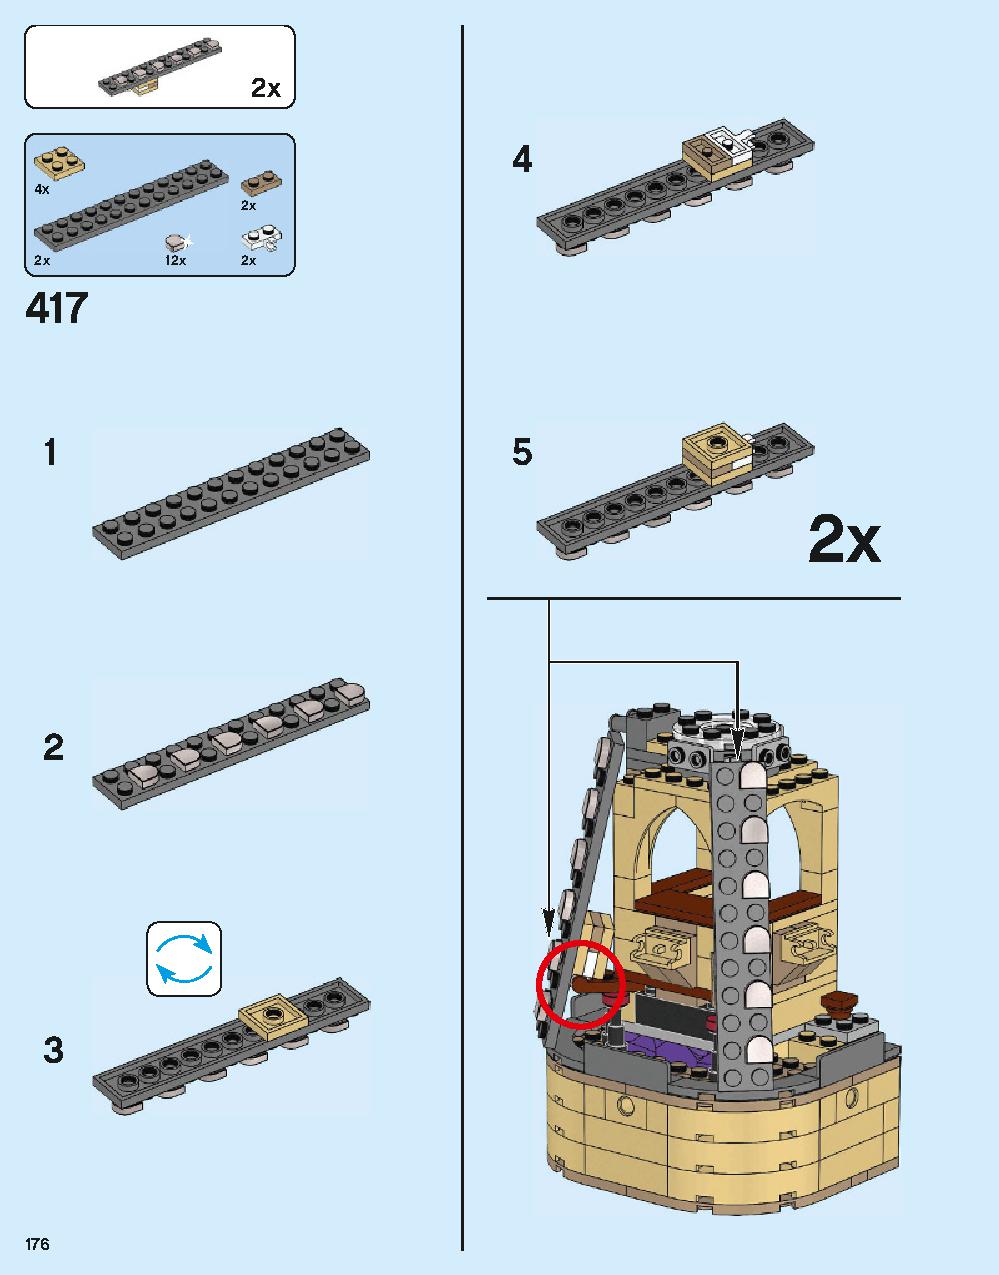 ホグワーツ城 71043 レゴの商品情報 レゴの説明書・組立方法 176 page